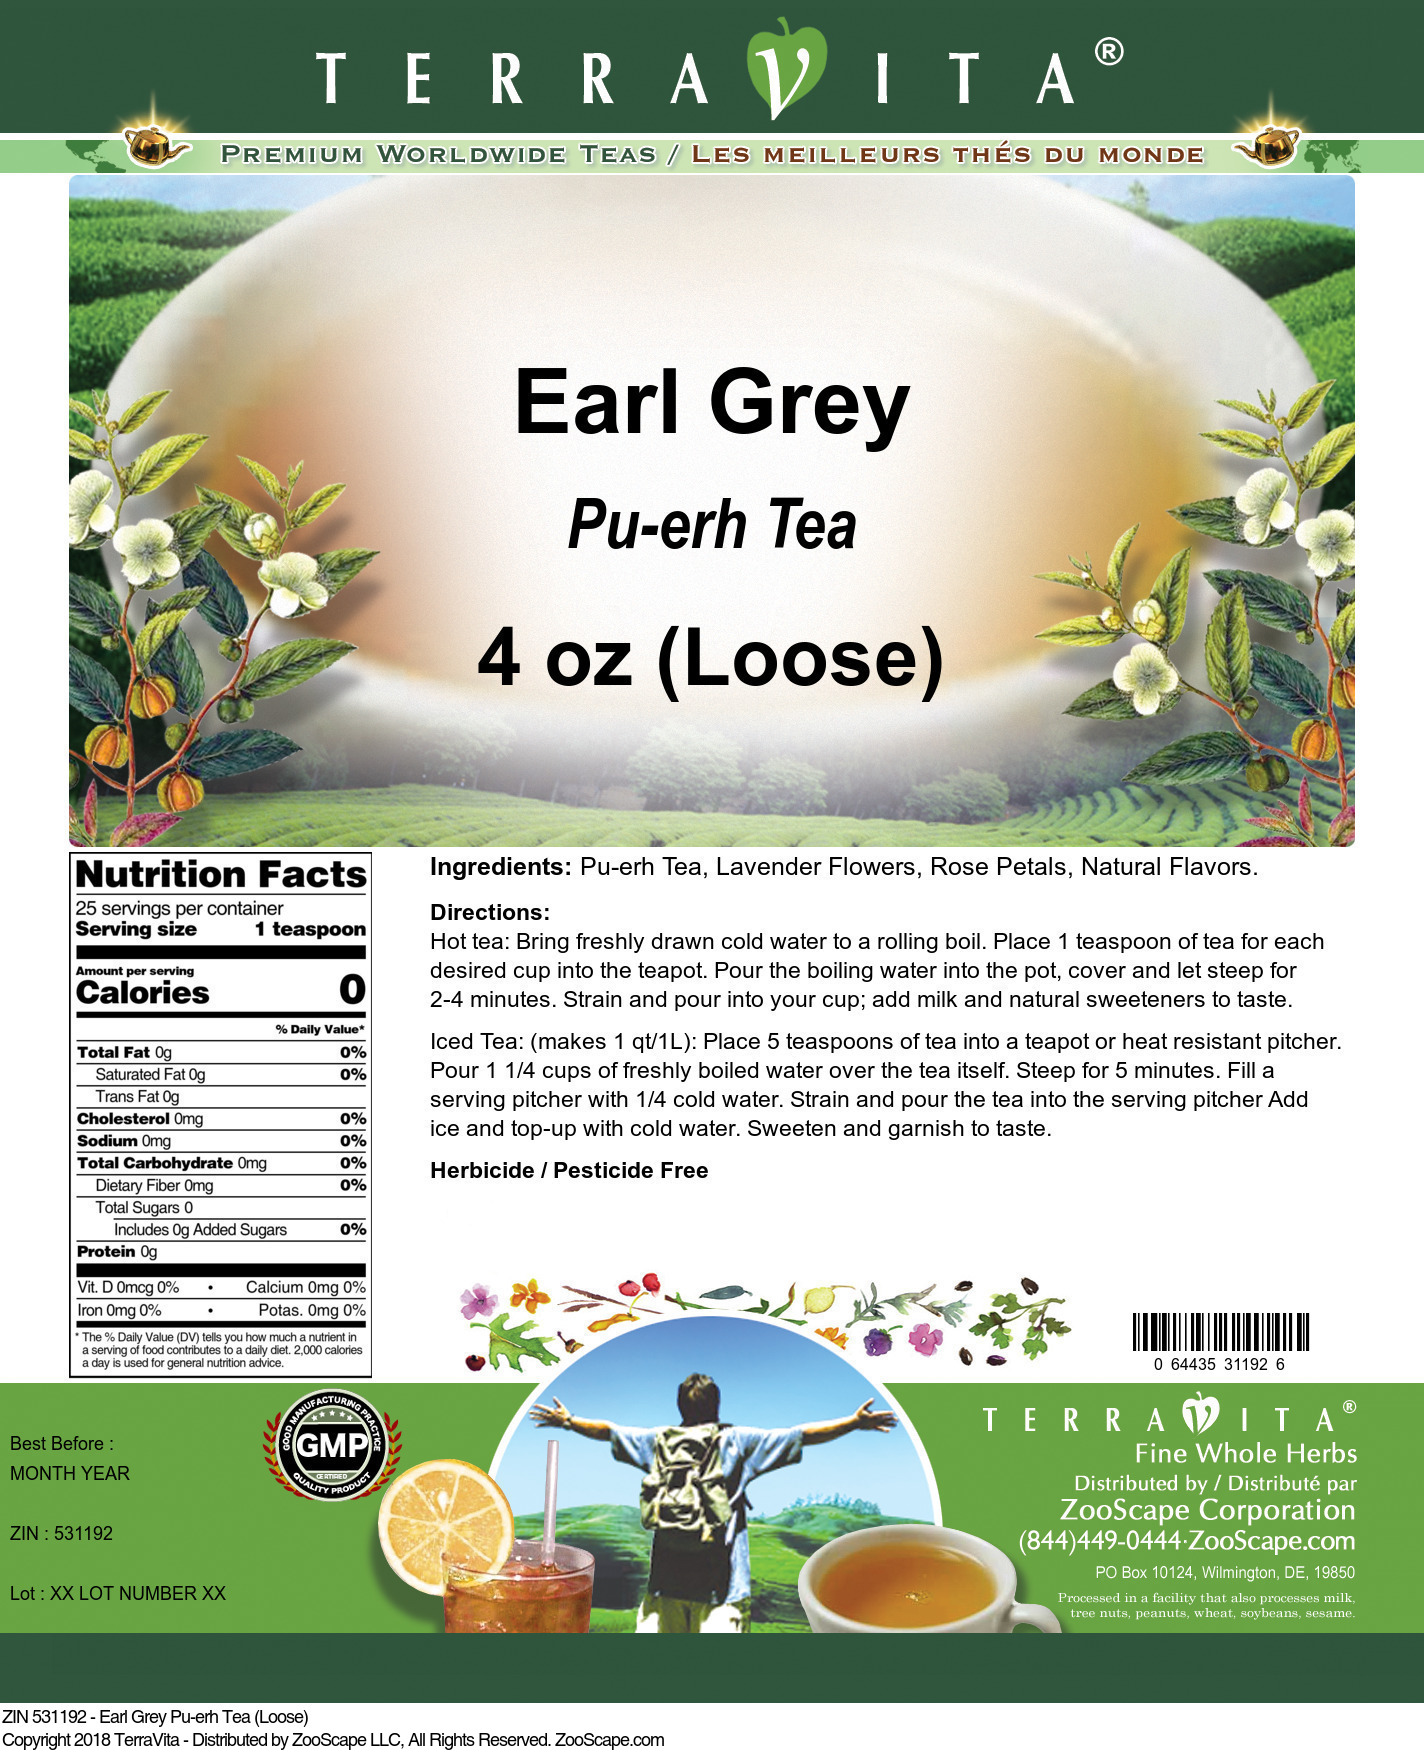 Earl Grey Pu-erh Tea (Loose) - Label